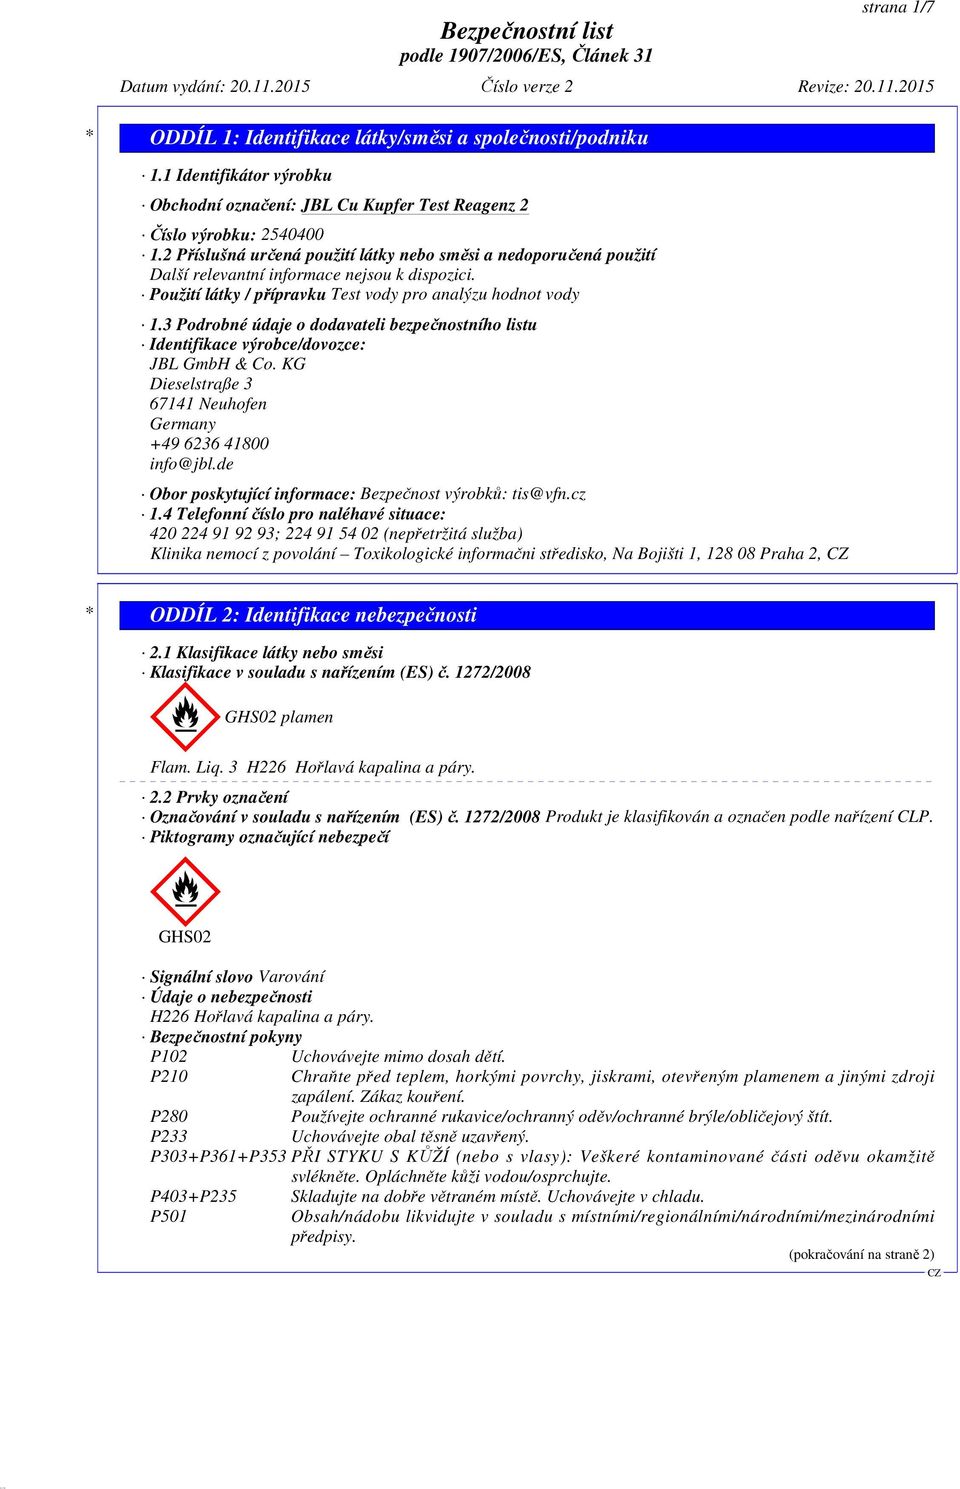 3 Podrobné údaje o dodavateli bezpečnostního listu Identifikace výrobce/dovozce: JBL GmbH & Co. KG Dieselstraße 3 67141 Neuhofen Germany +49 6236 41800 info@jbl.